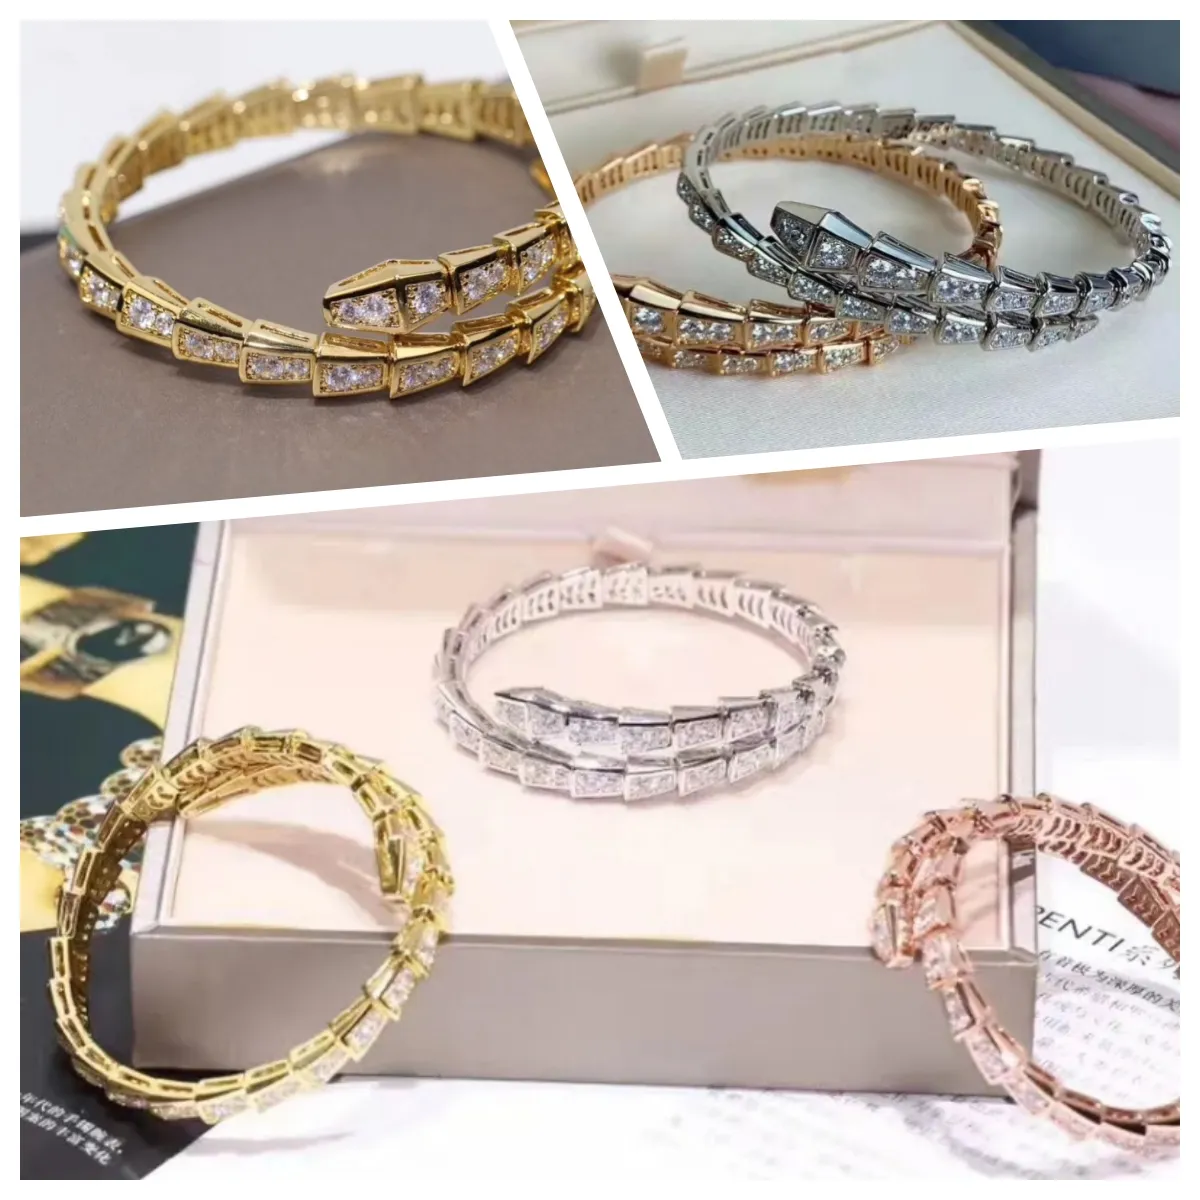 Projektant bransoletki wąż bransoletka projektant biżuterii luksusowe bransoletki bransoletki dla mężczyzny dla kobiet węża bransoletka bransoletka retro metalowe bransoletki bez pudełka 5A